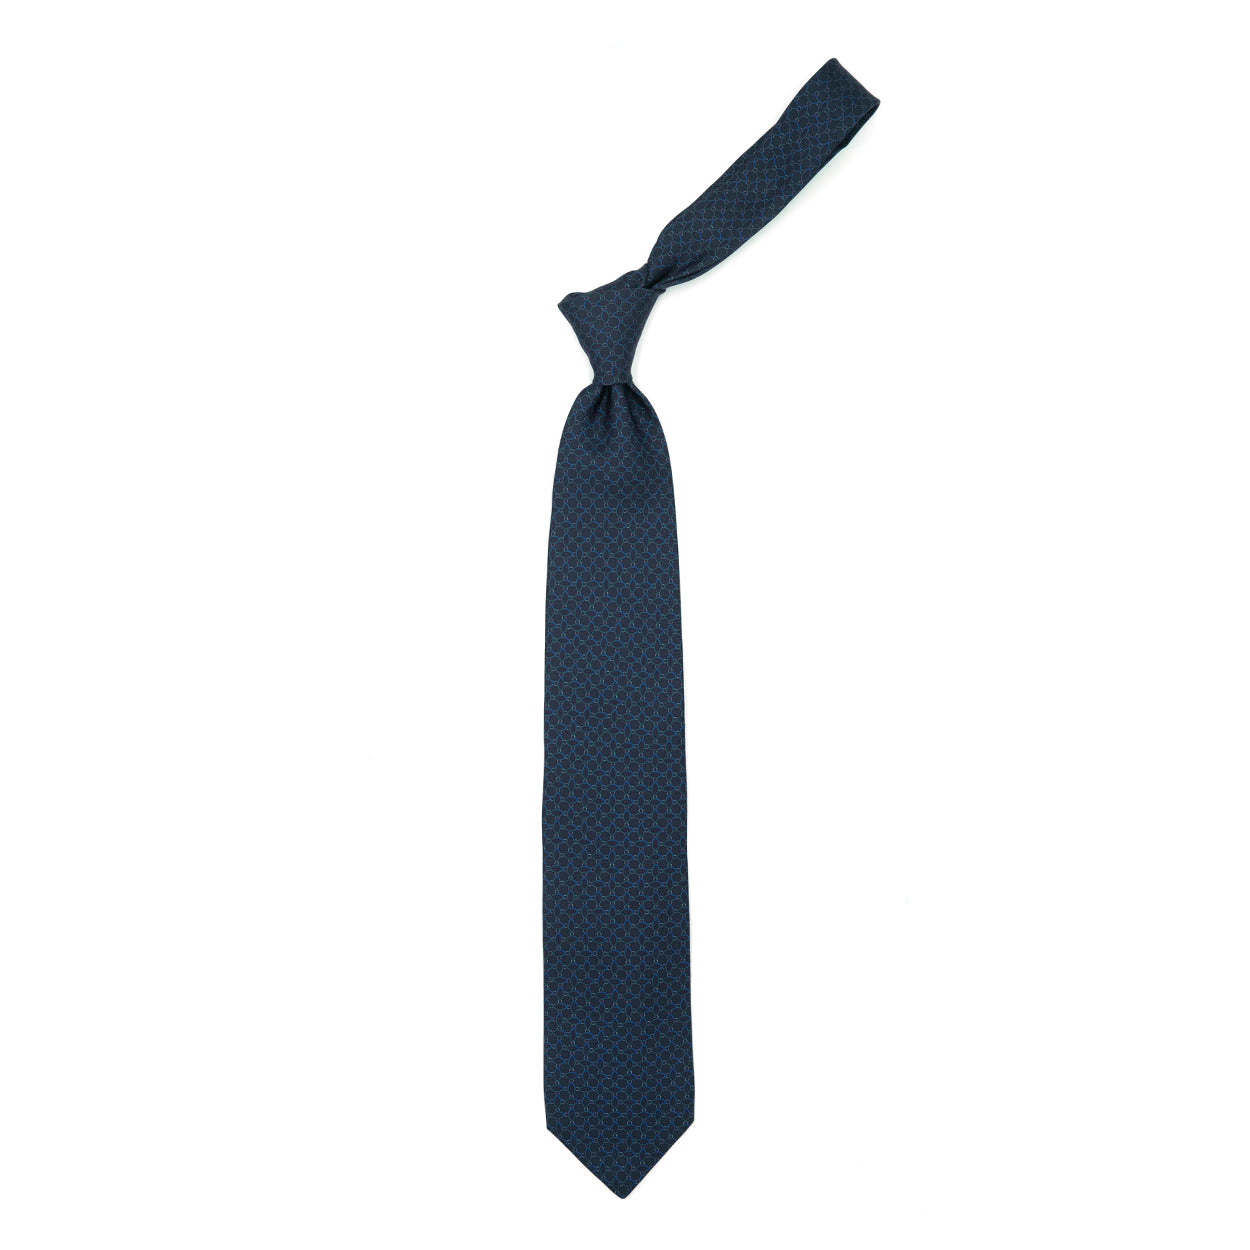 Cravatta blu con pattern astratto azzurro